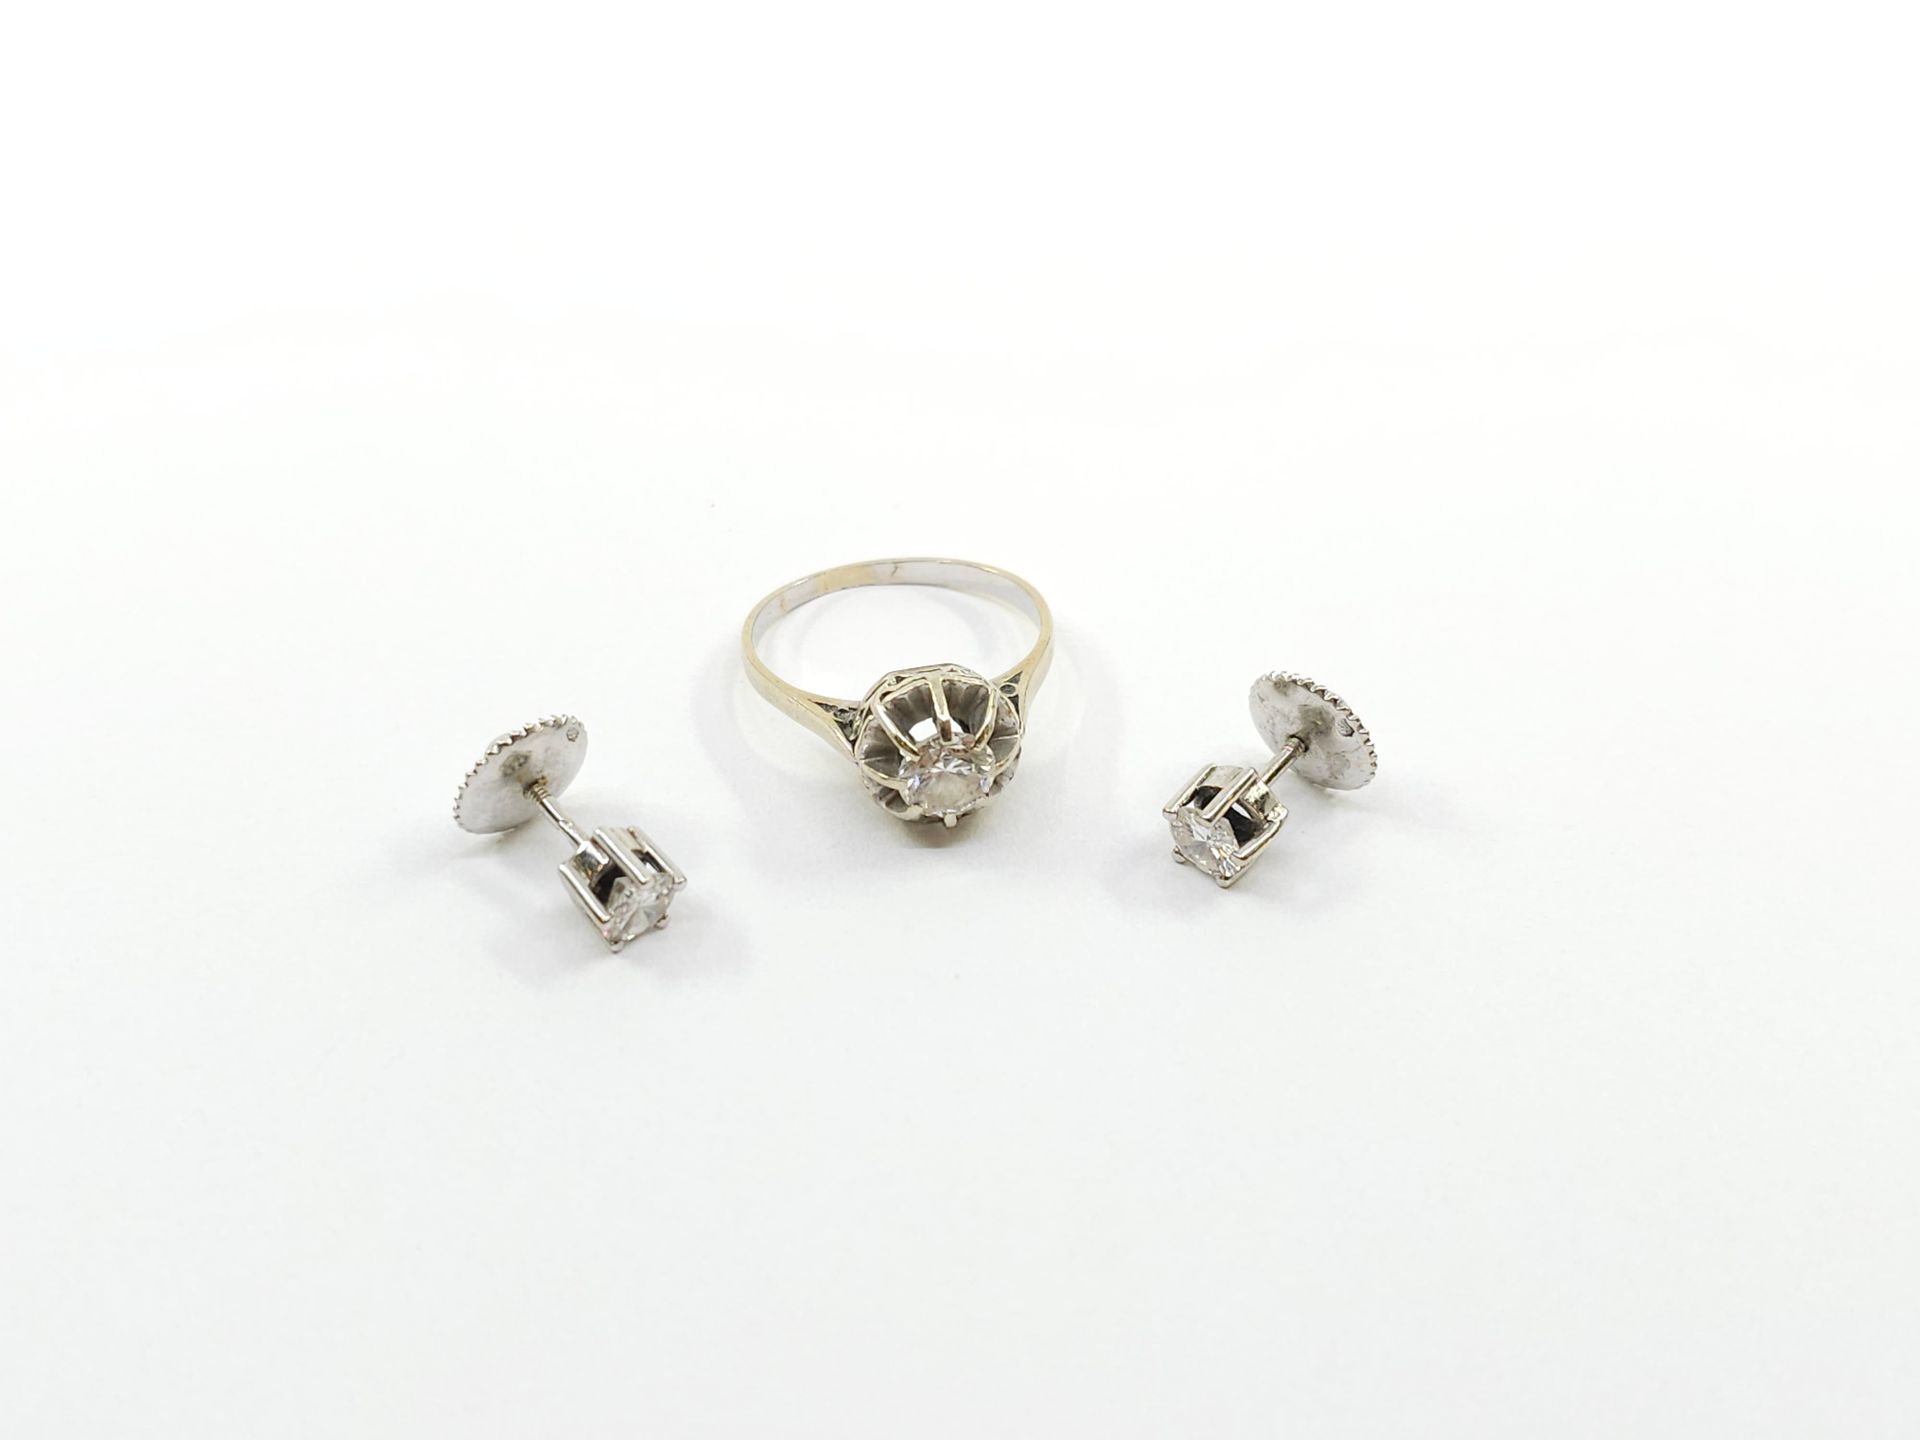 Null HALBES PARURE aus 750° Weißgold mit Diamantbesatz.
Ring und Ohrringe
TDD 50